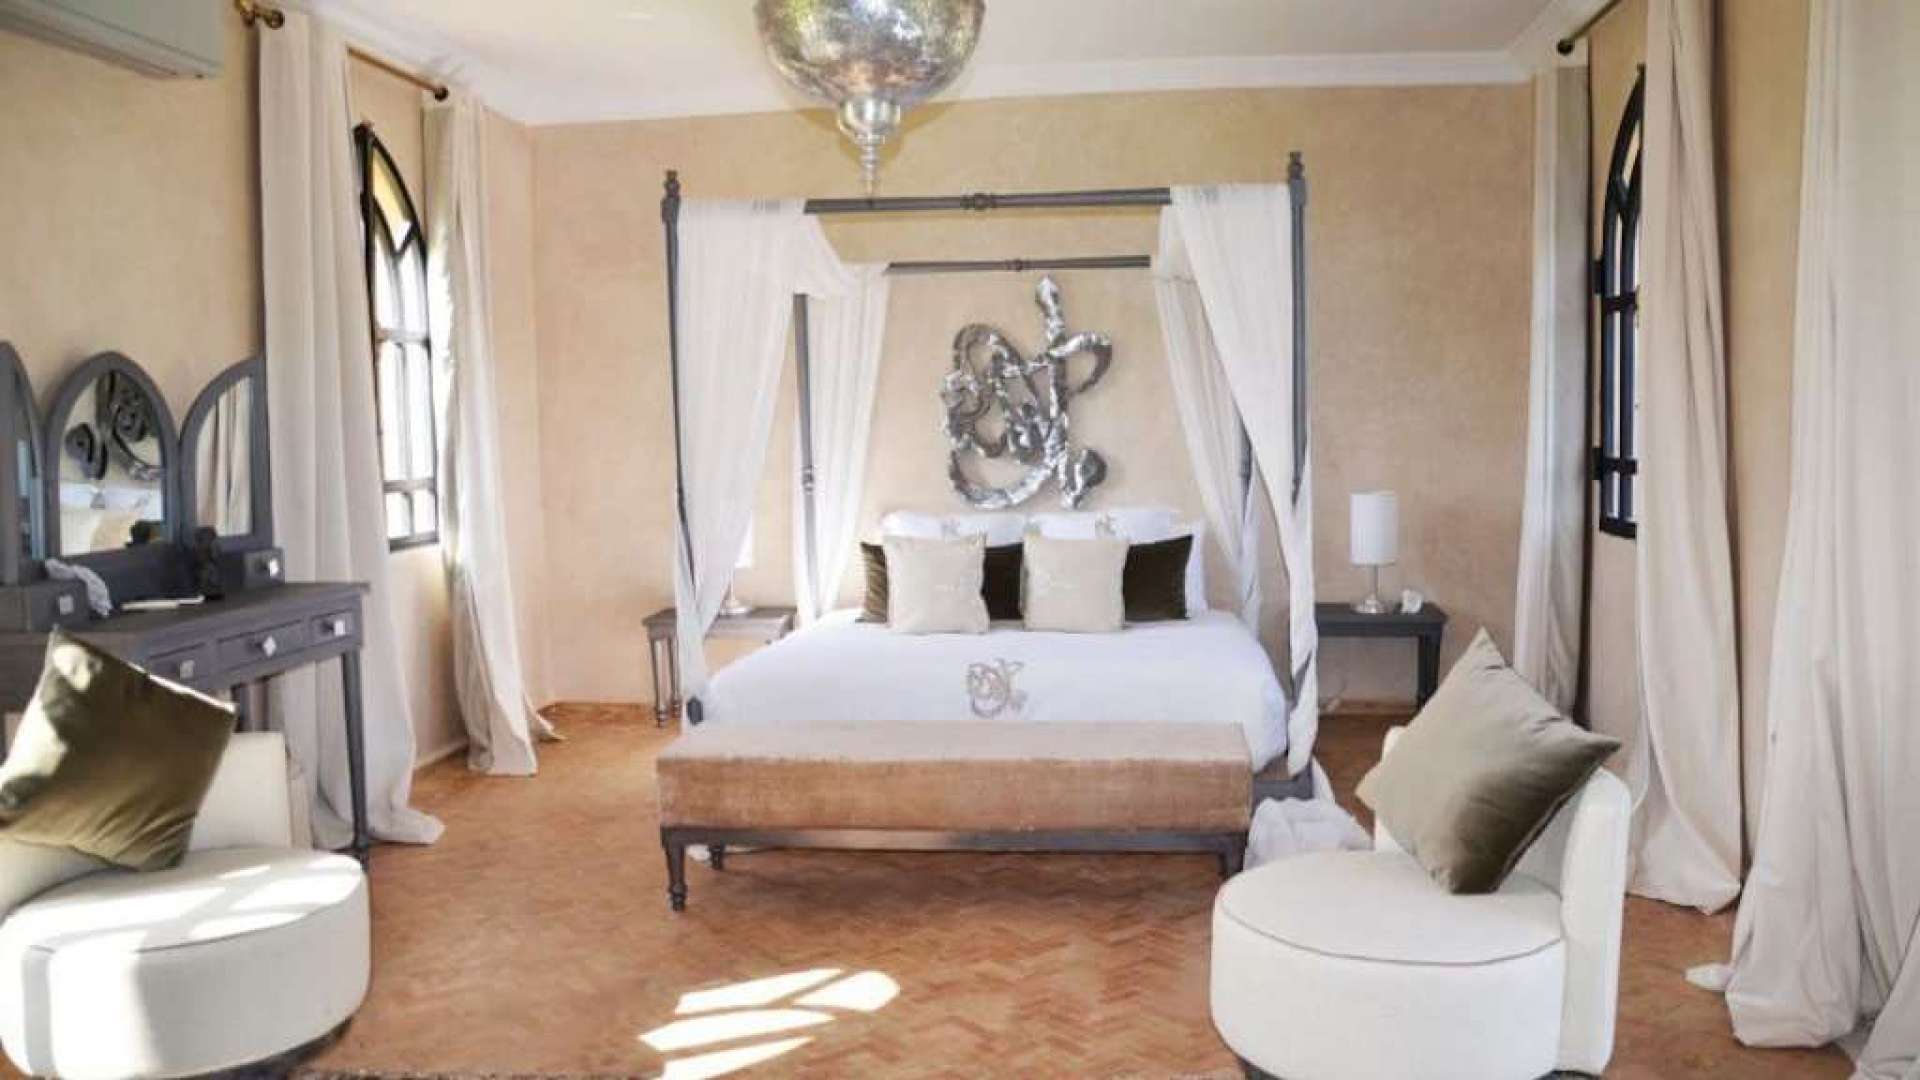 Vente,Villa,Vente villa d’hôtes de 7 suites avec tennis et piscine chauffée à 30 min. du centre de Marrakech,Marrakech,Route d'Ouarzazate